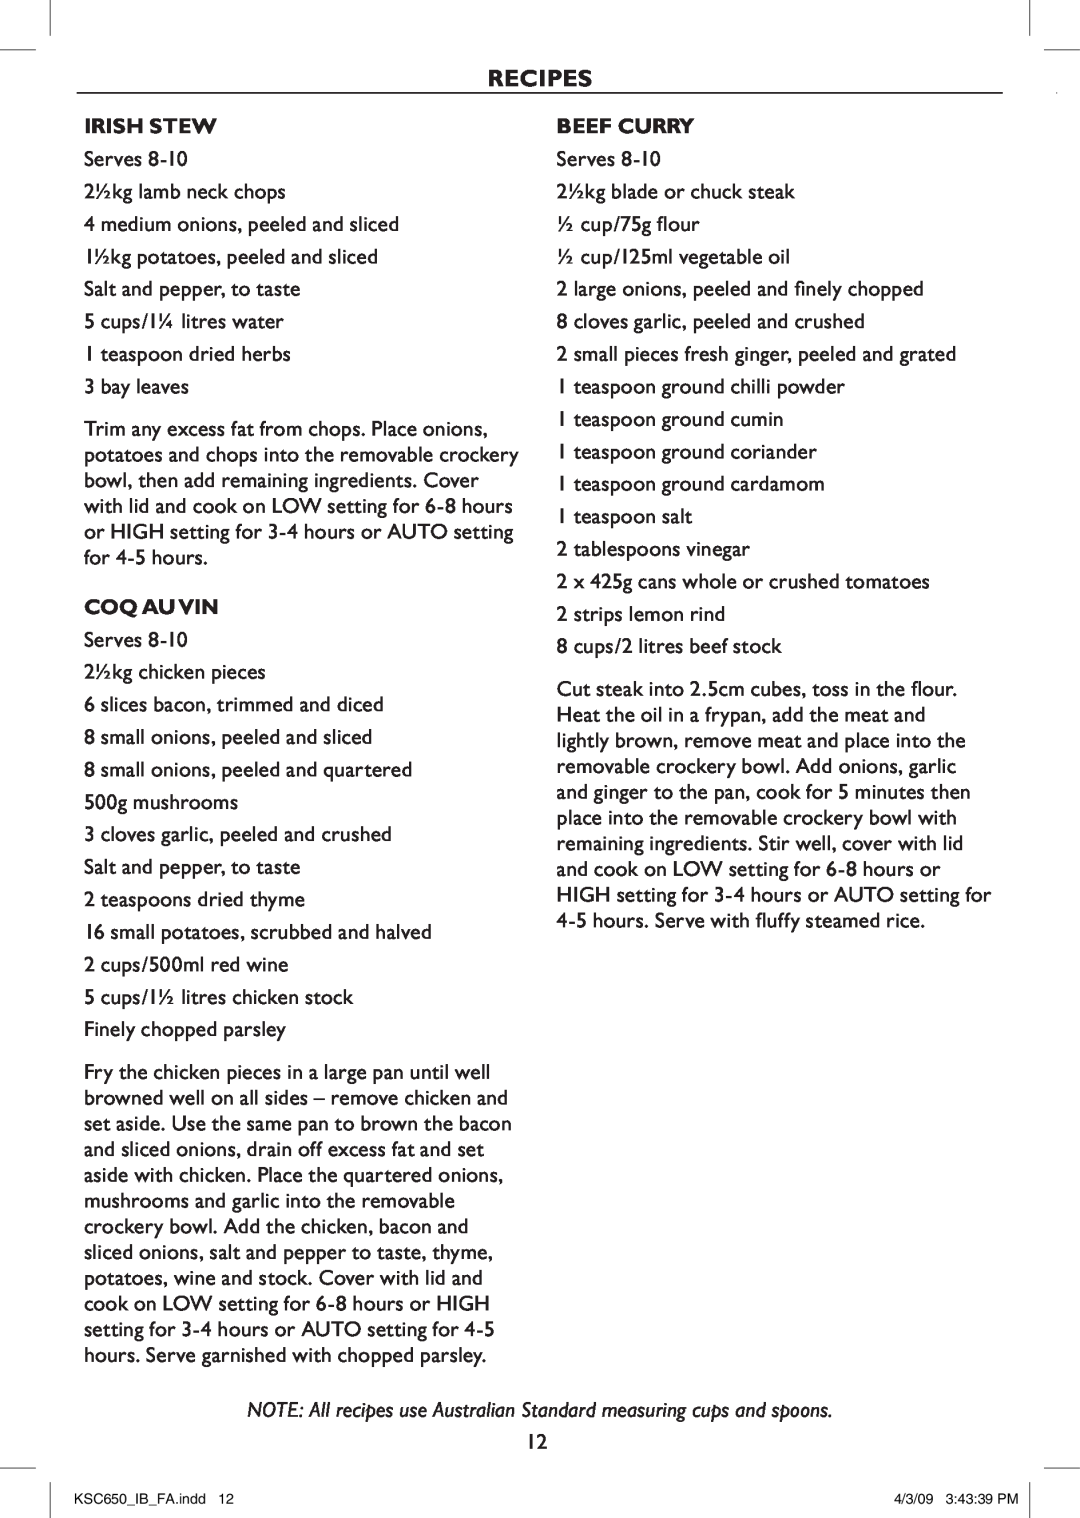 Kambrook KSC650 manual Recipes, Irish Stew, Coq Au Vin, Beef Curry 